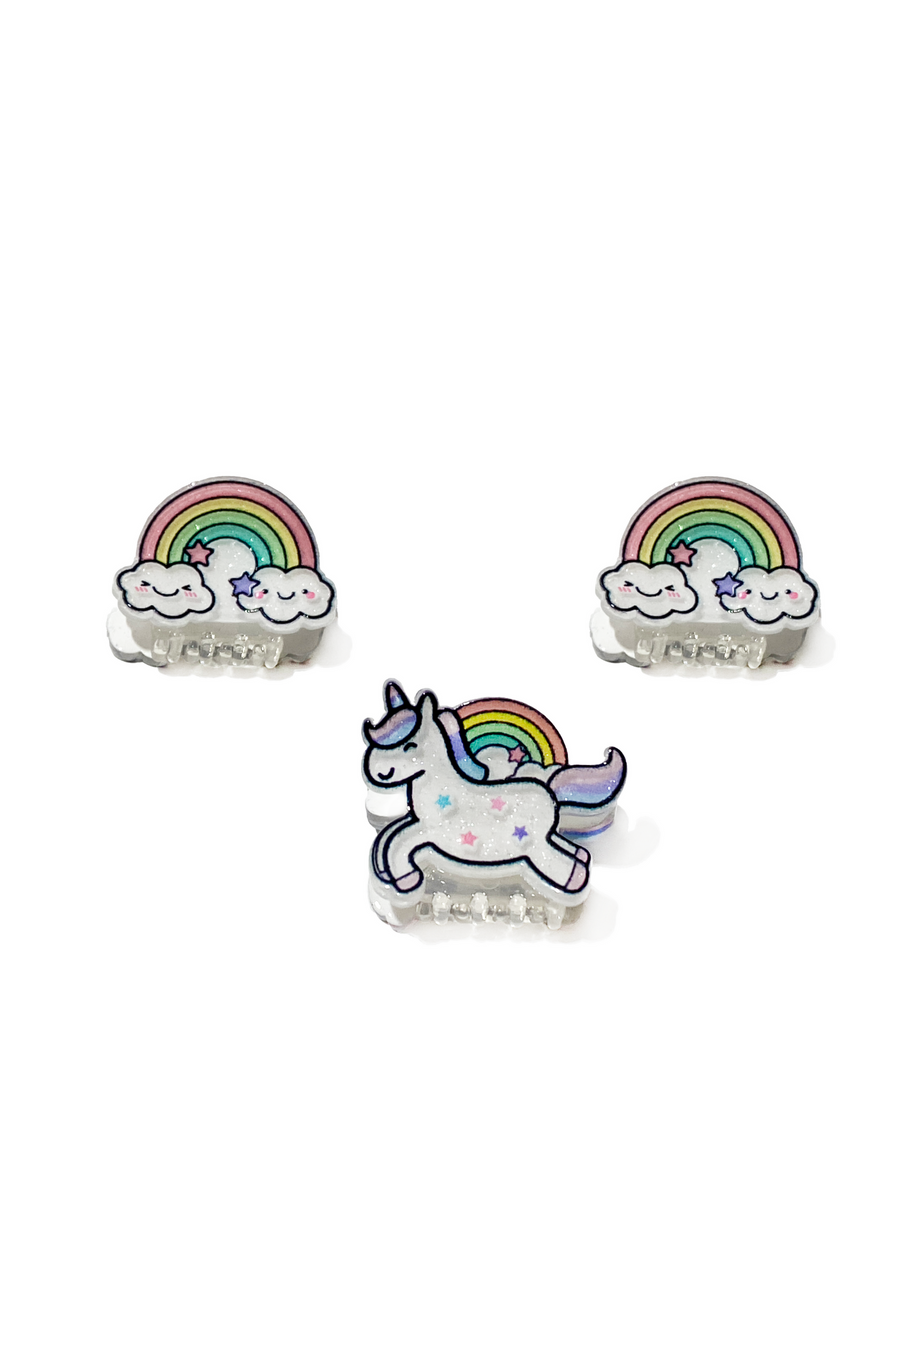 Unicorn, Rainbow Mini Hair Clips